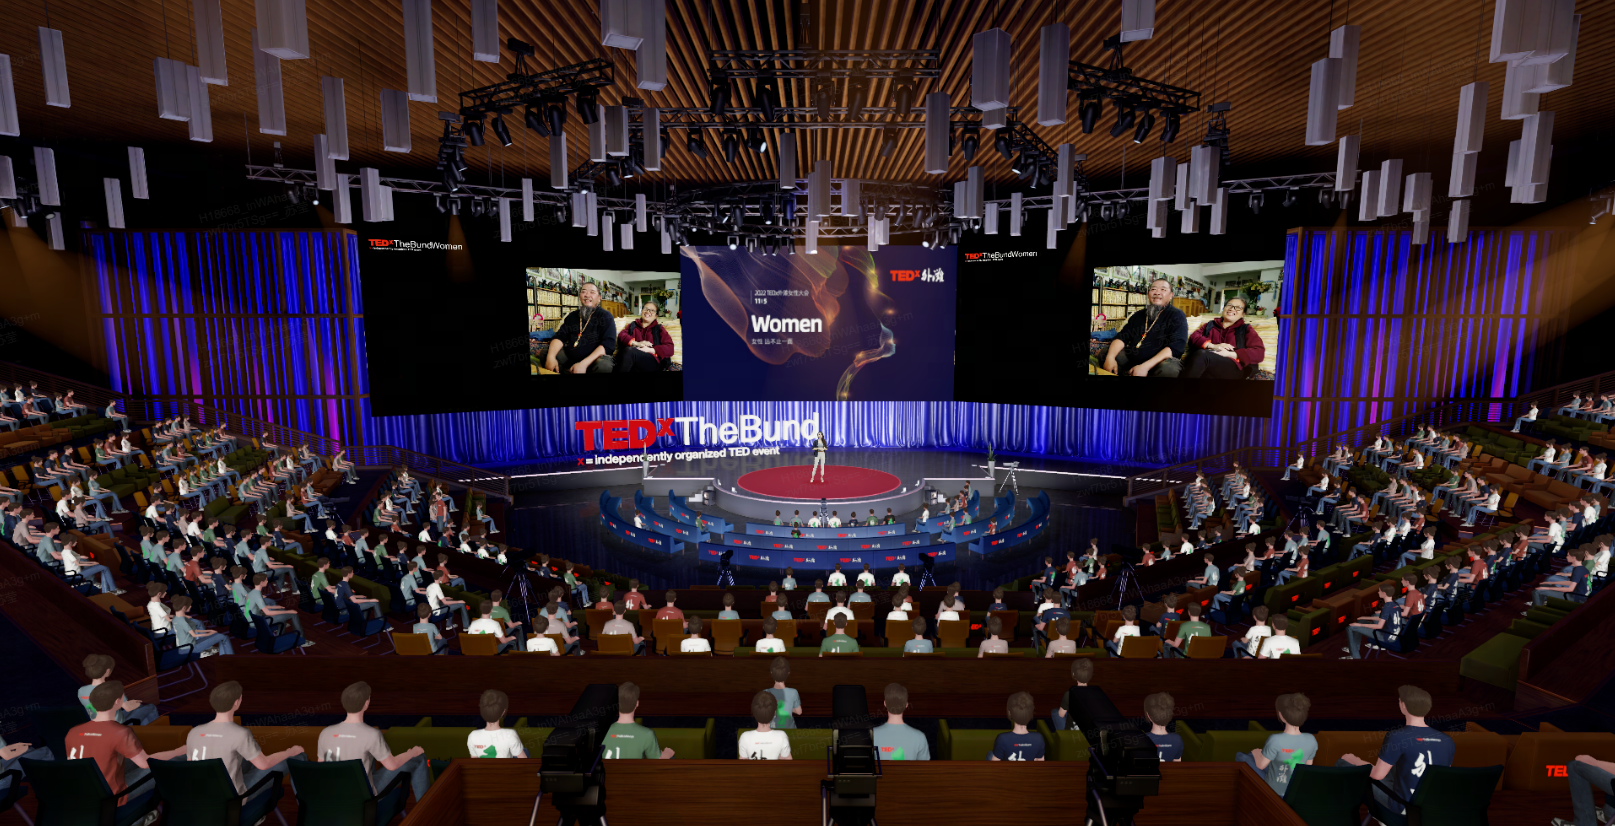 这是一张TEDx活动的图片，舞台上有演讲者，观众席坐满了人，场内灯光照明，氛围庄重而专注。